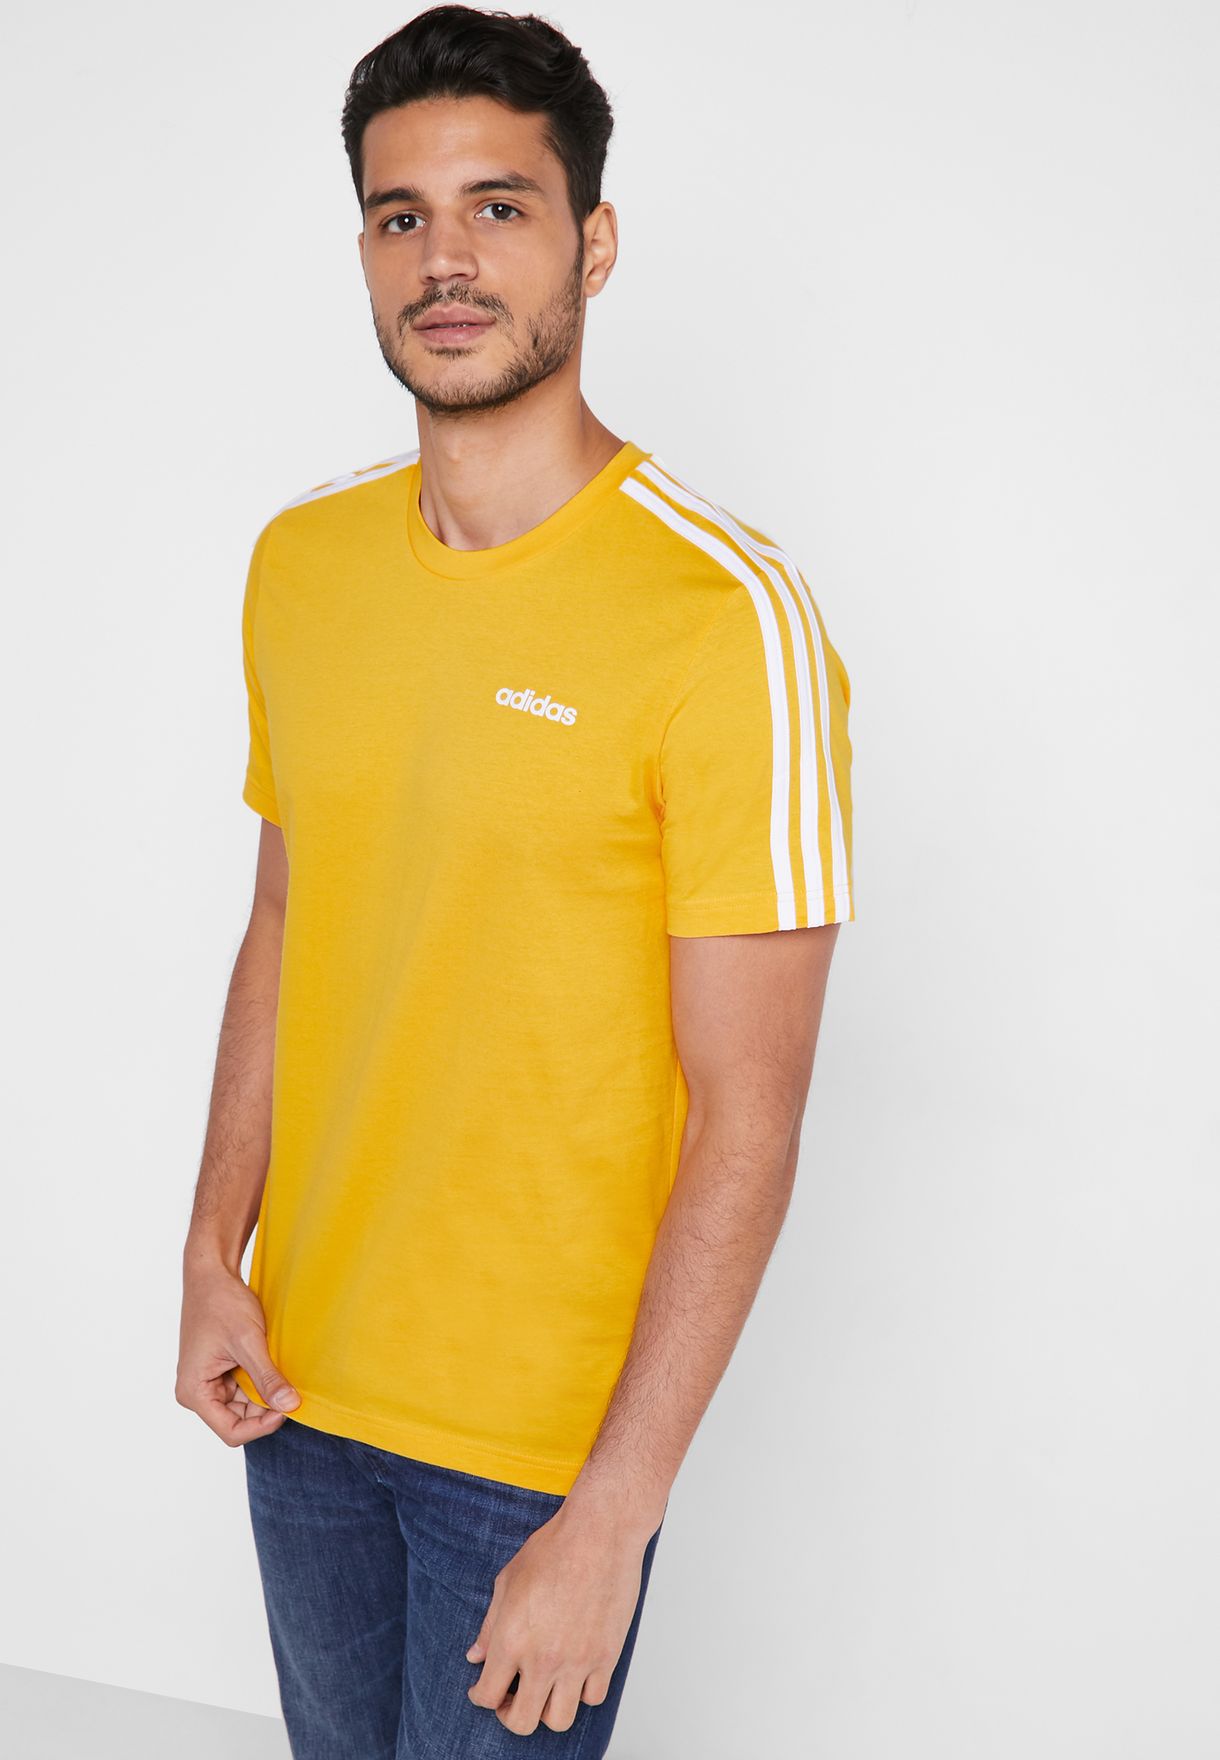 mens yellow adidas shirt